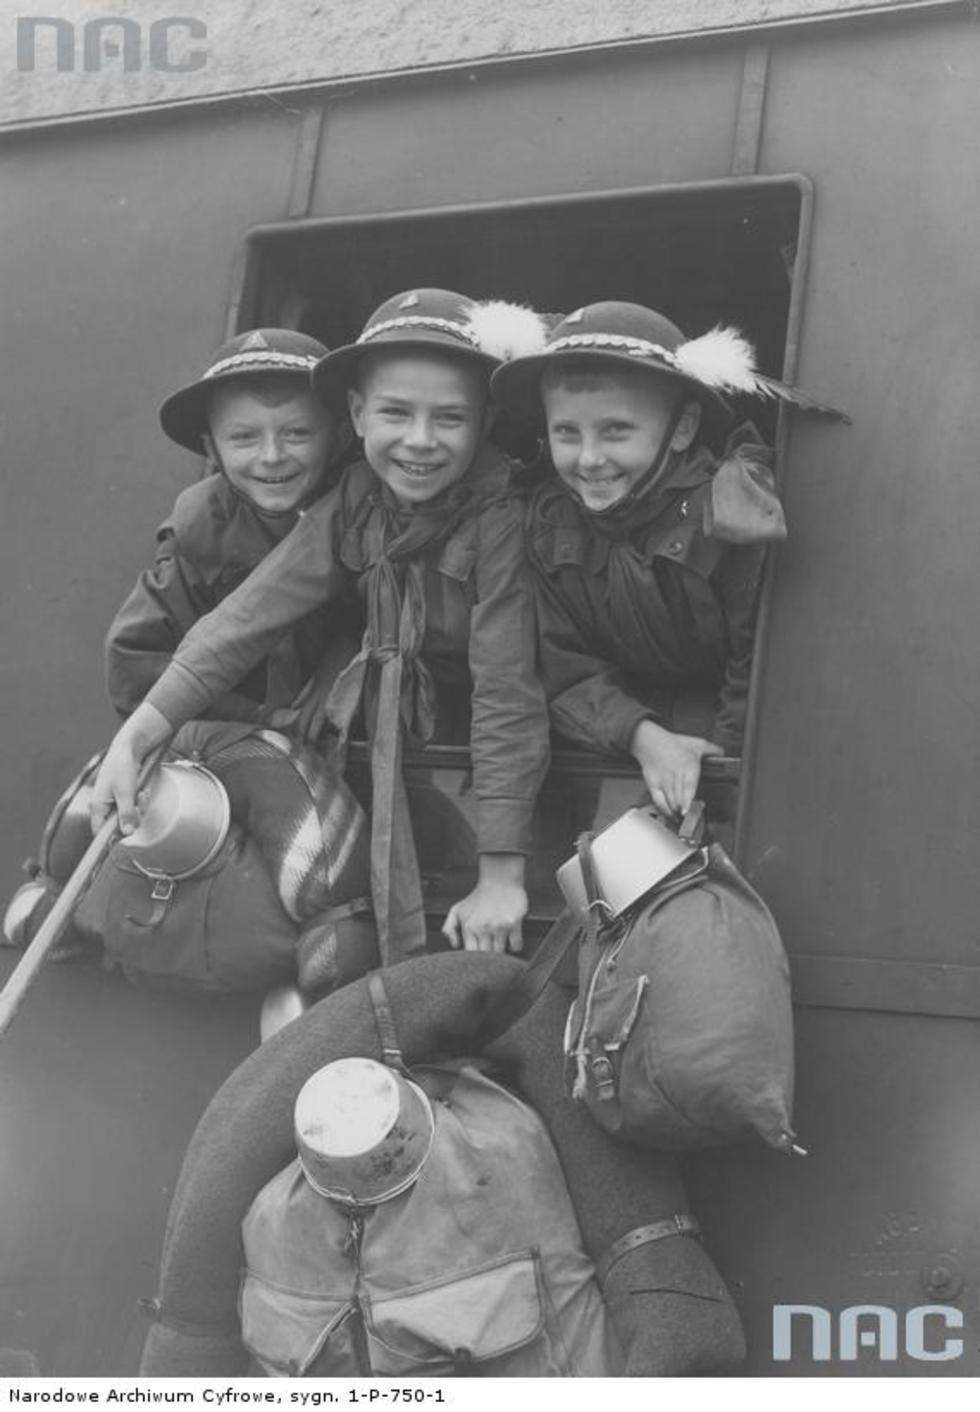  I już w 1938 roku bicie rekordu ile chłopaków zmieście się w oknie wagonu było bardzo popularne. Zdjęcia krakowskich zuchów robił przedwojenny reporter Ilustrowanego Kuriera Codziennego.